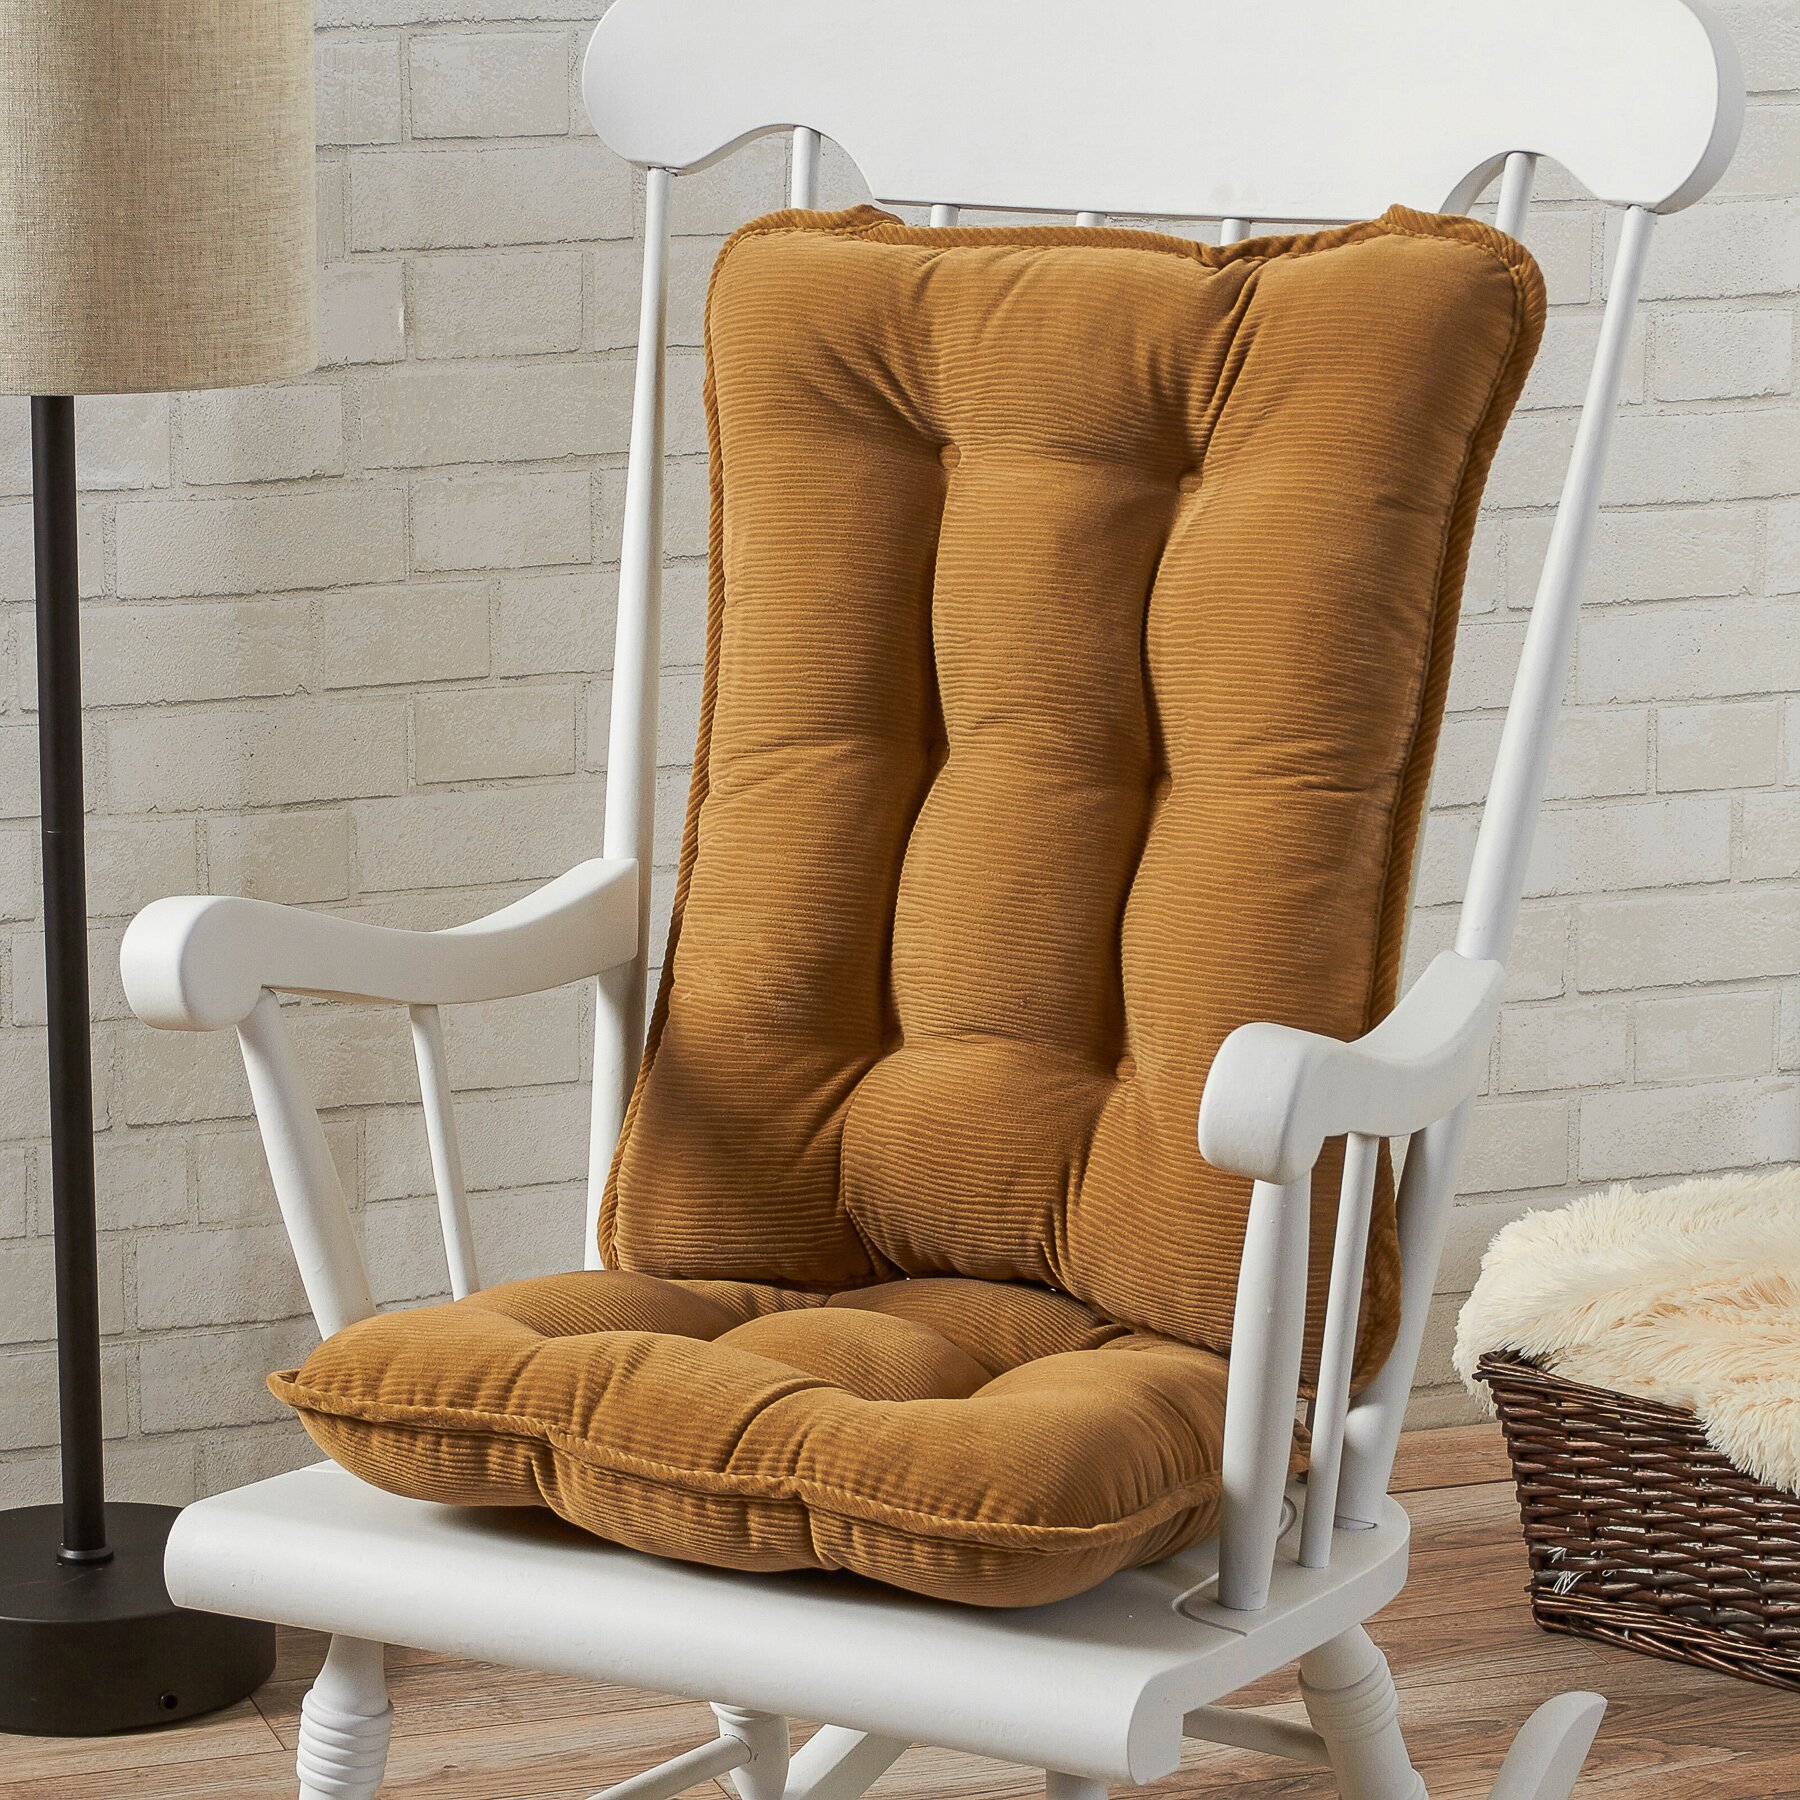 Greendale Home Fashions Rocking Chair Cushion & Reviews | Wayfair